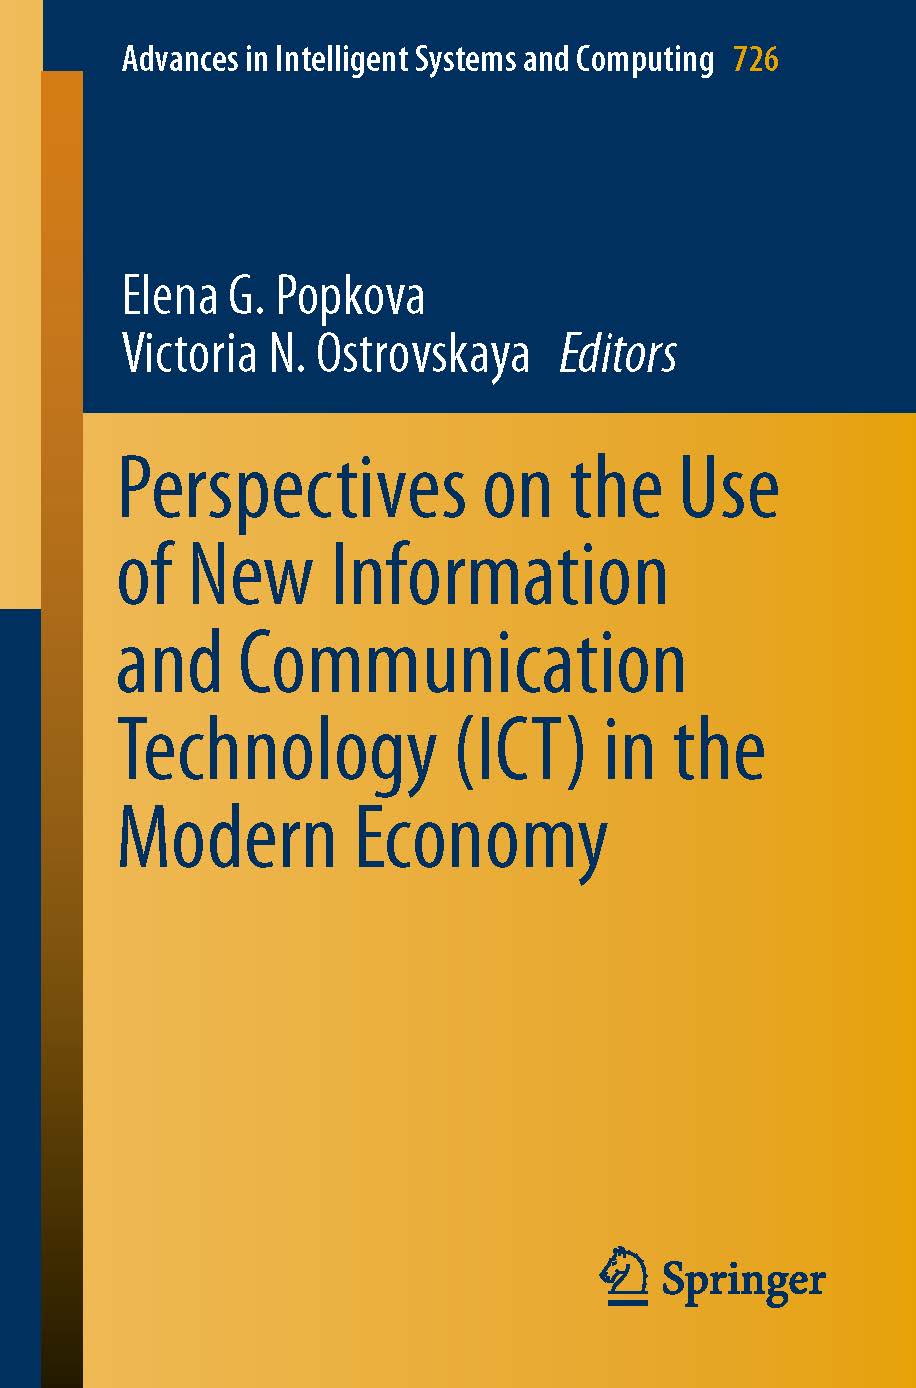 页面提取自－2019_Book_Perspectives on the Use of New Informat.jpg